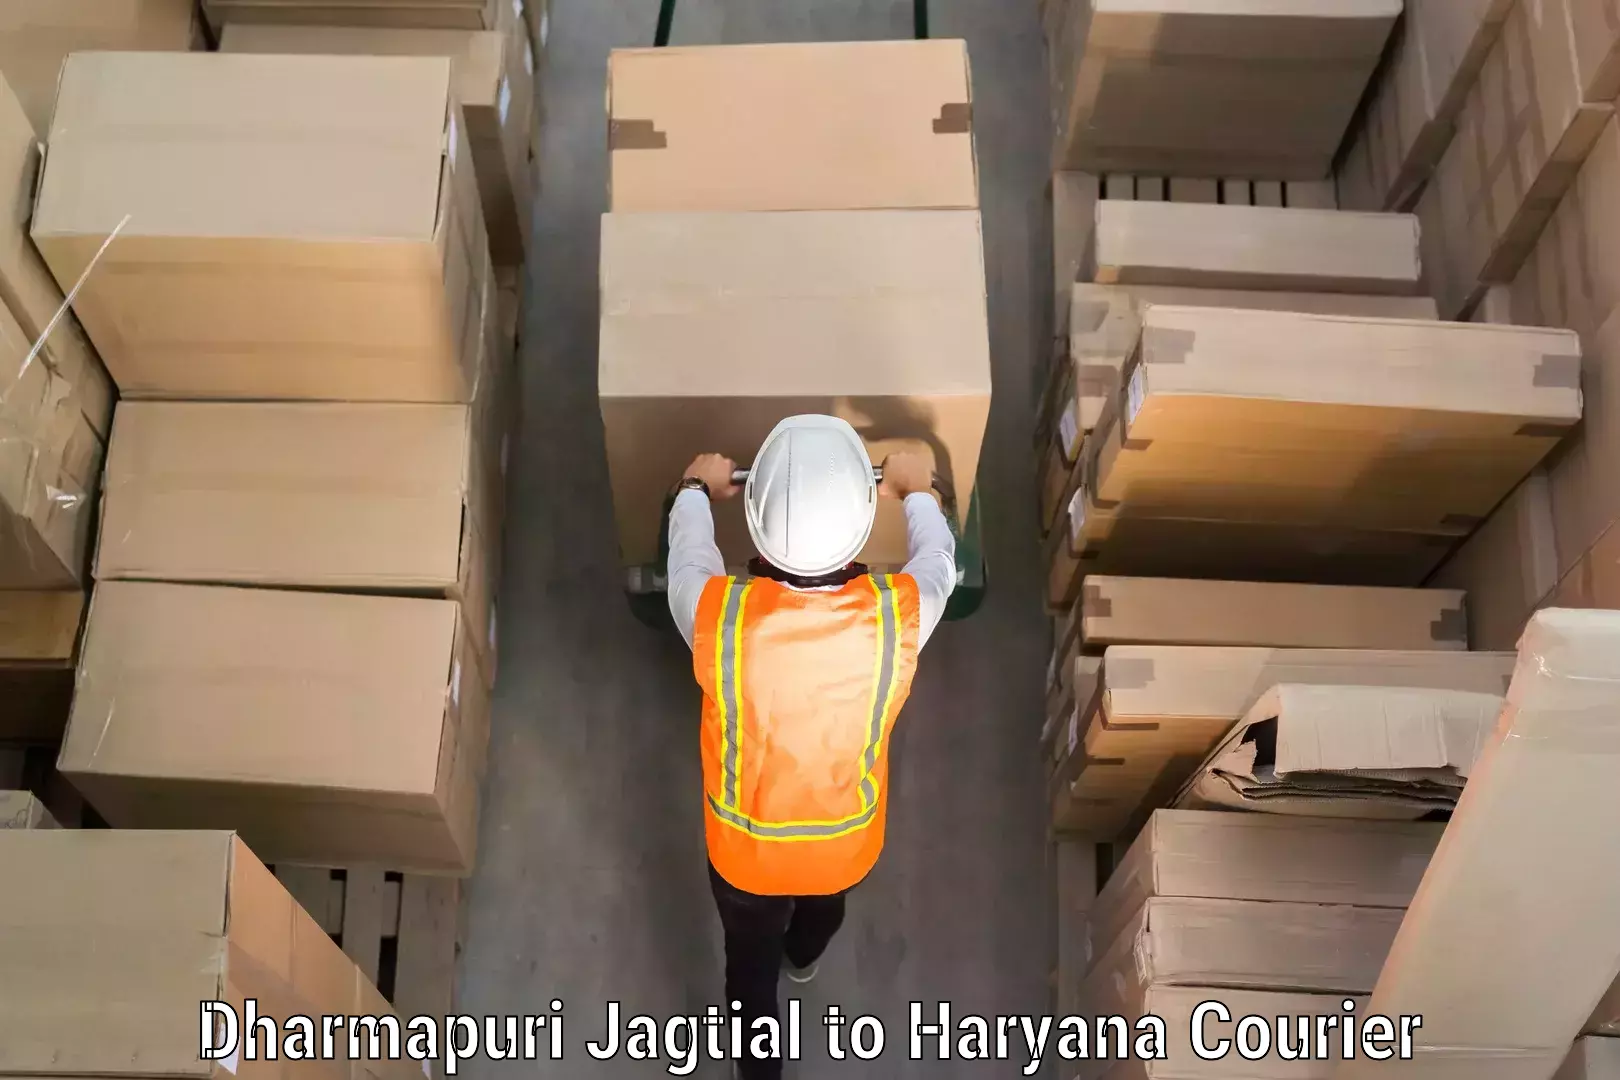 Luggage transport solutions Dharmapuri Jagtial to Nuh